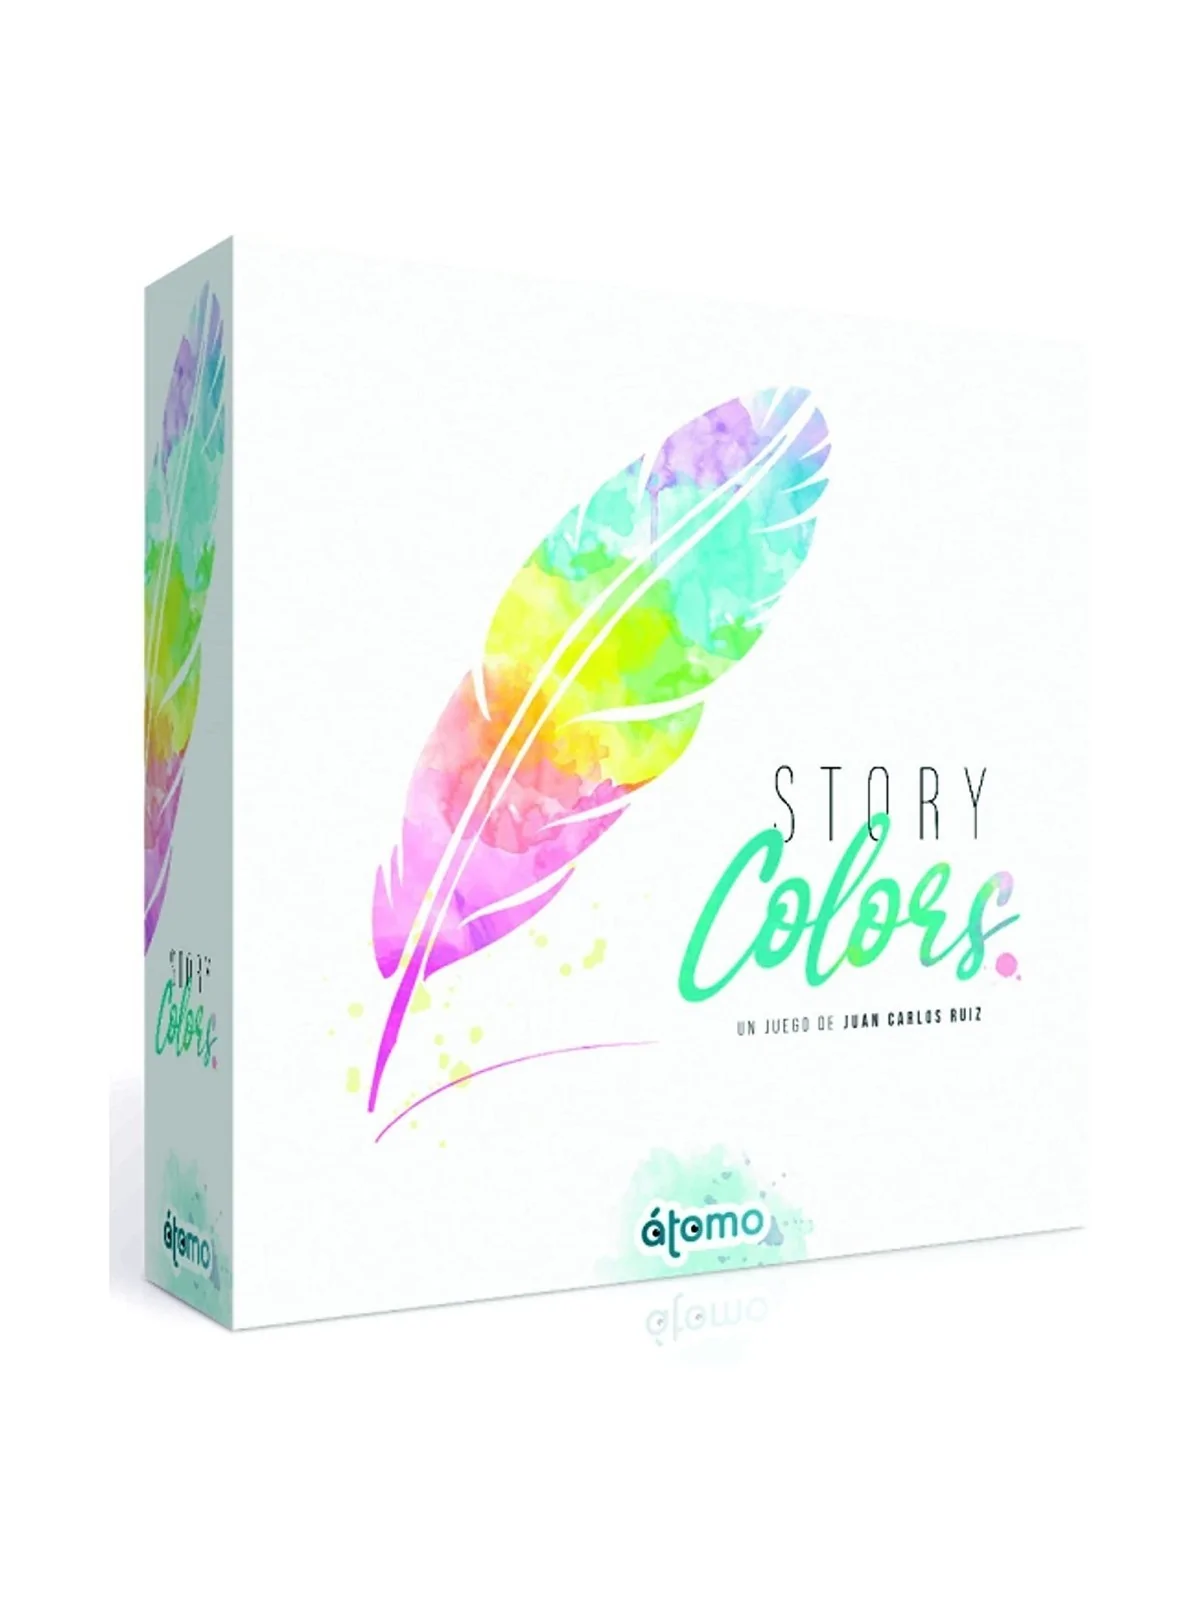 Comprar Story Colors barato al mejor precio 22,78 € de Atomo Games